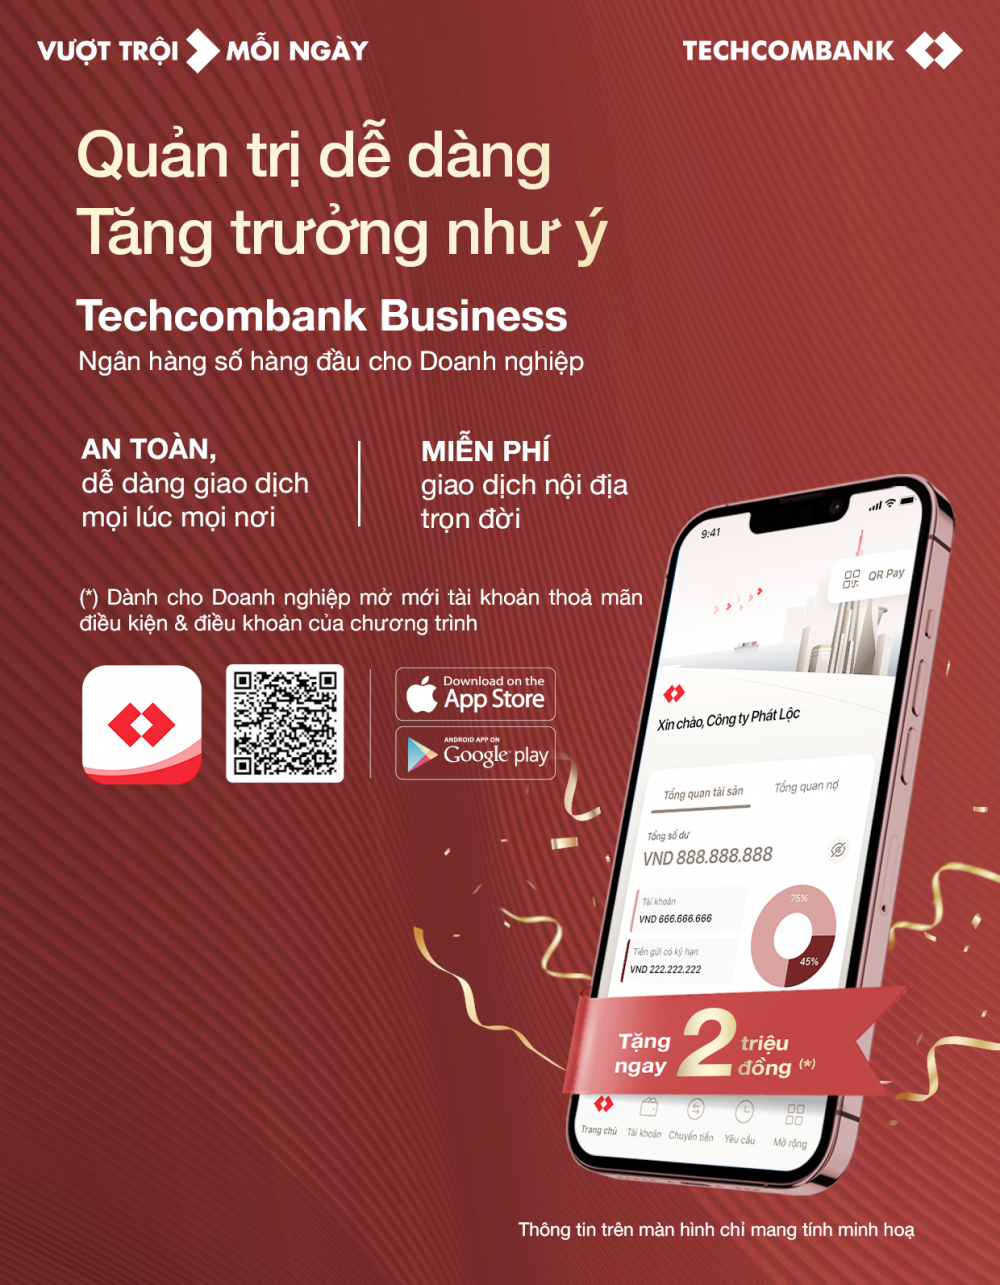 Techcombank: Chính thức ra mắt ngân hàng số dành cho doanh nghiệp